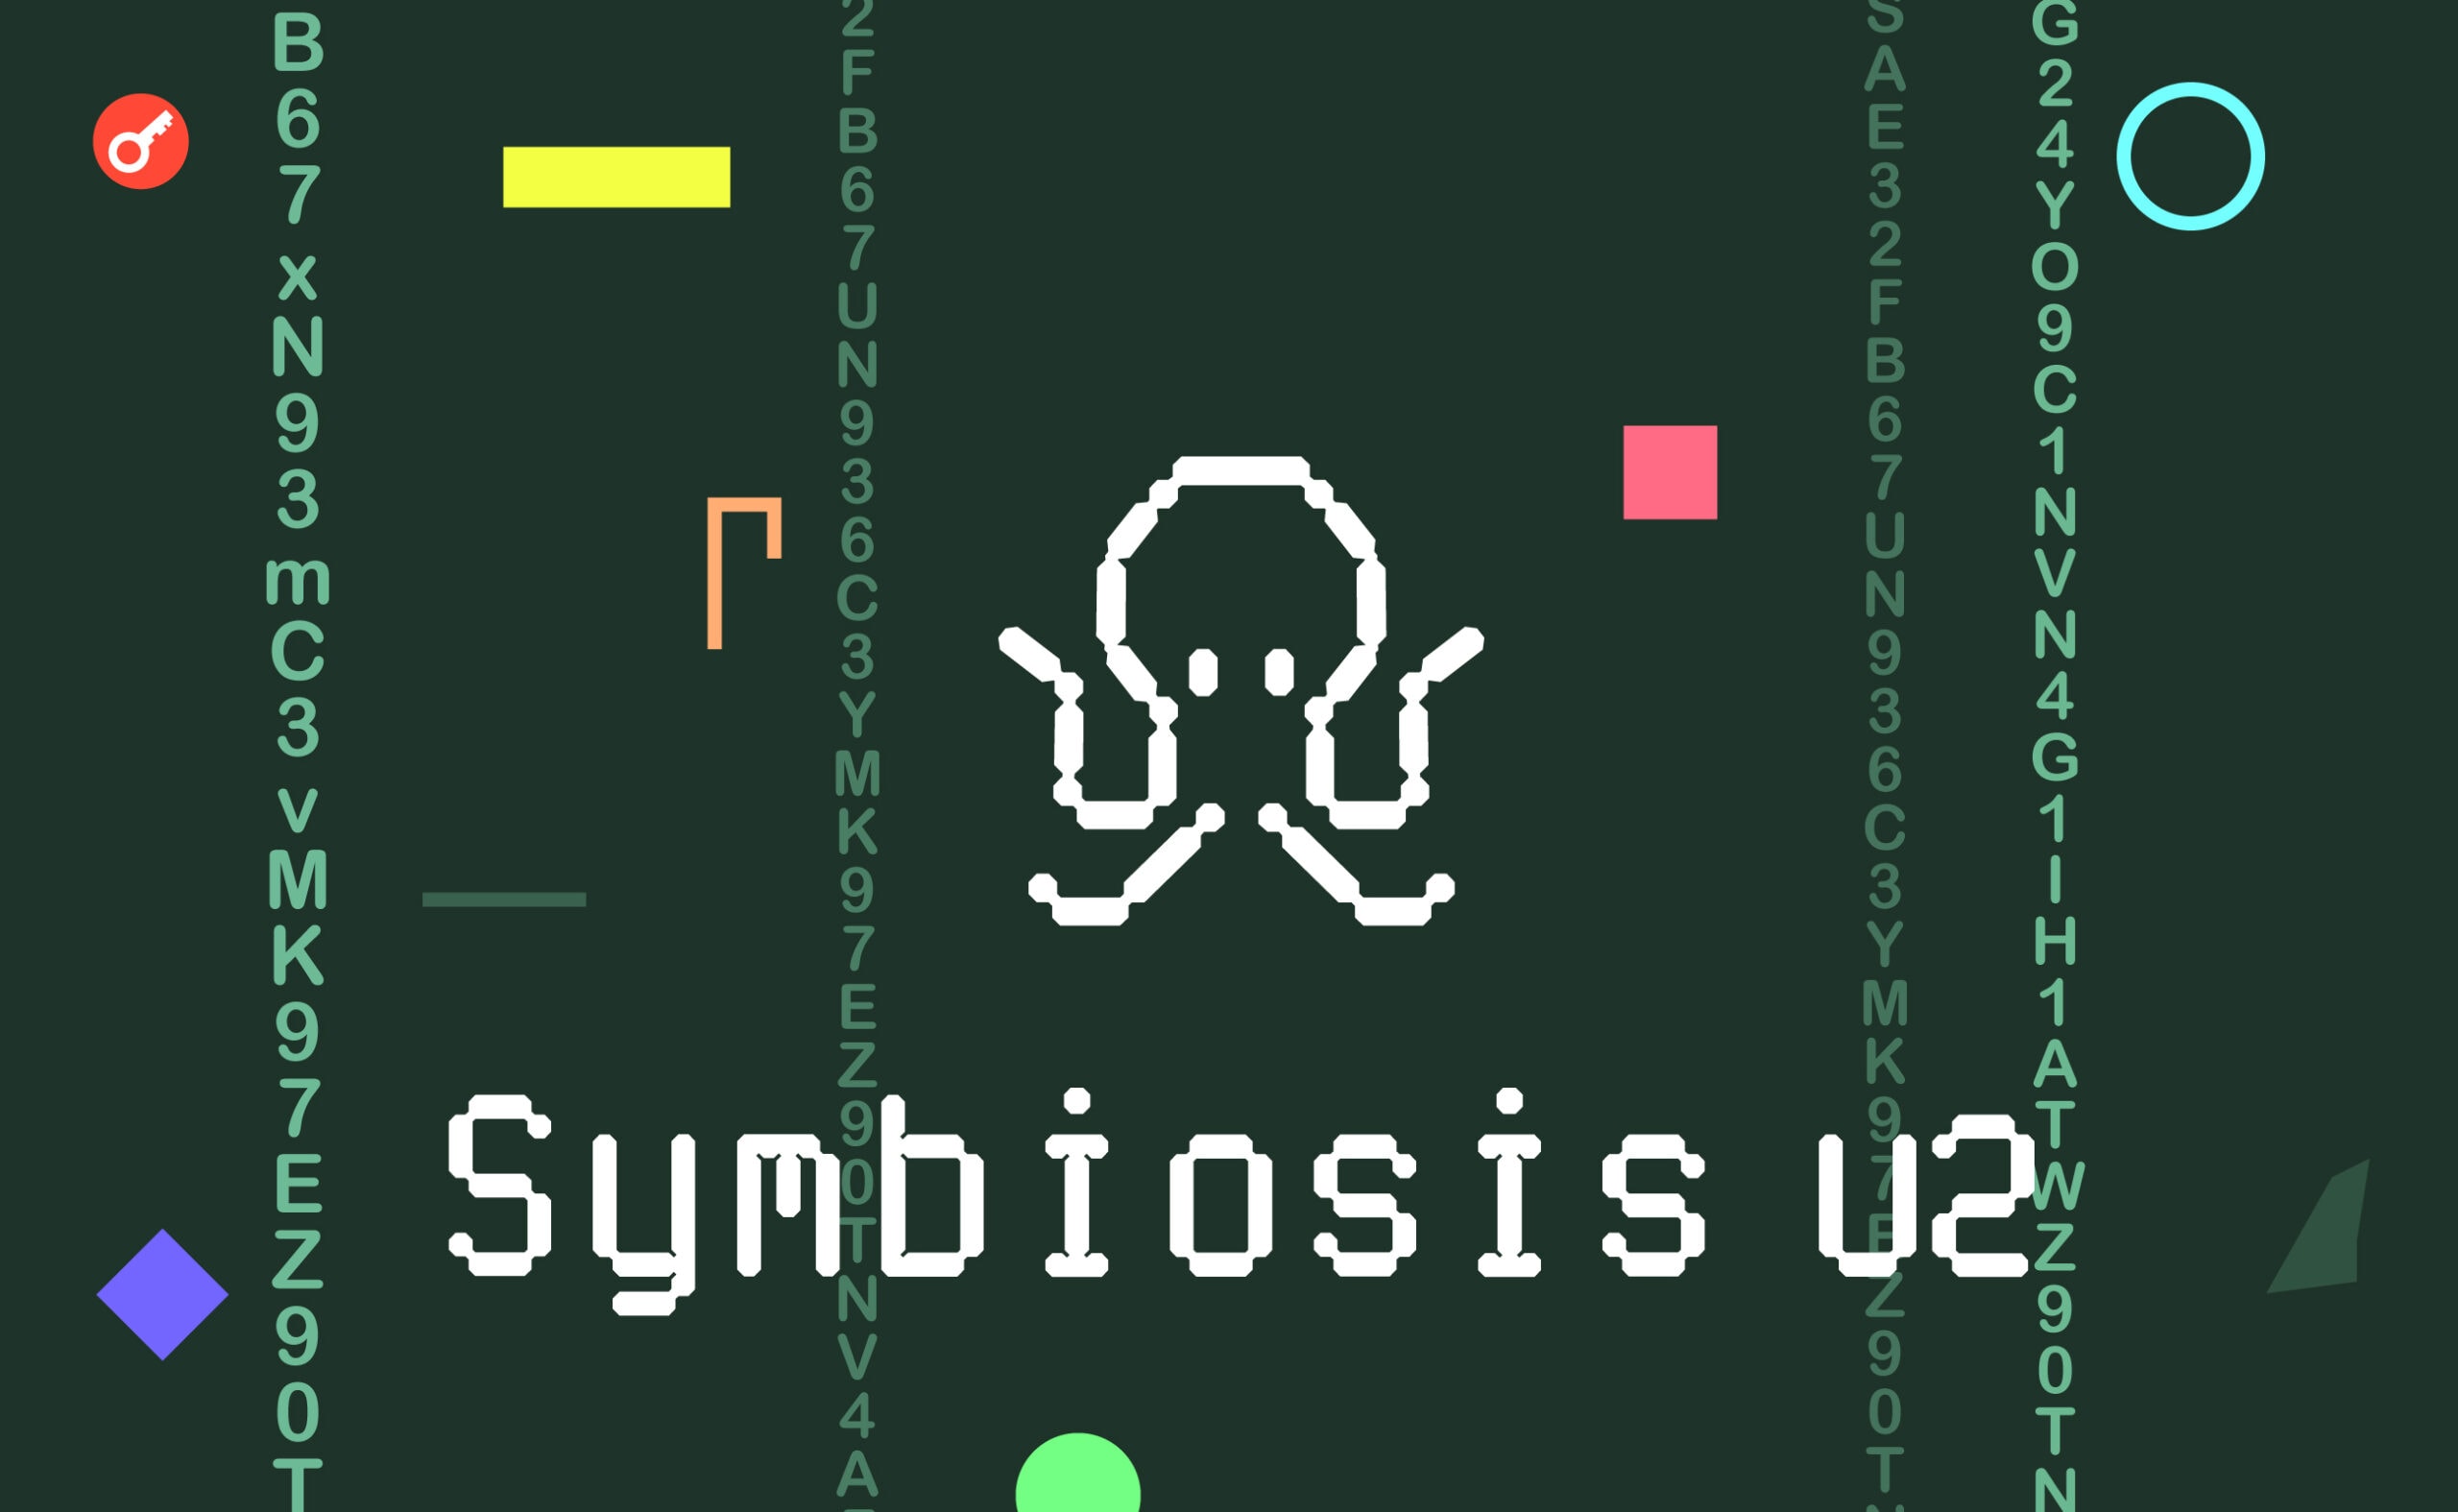 Symbiosis v2: что поменялось и как использовать? Заглавный коллаж статьи.